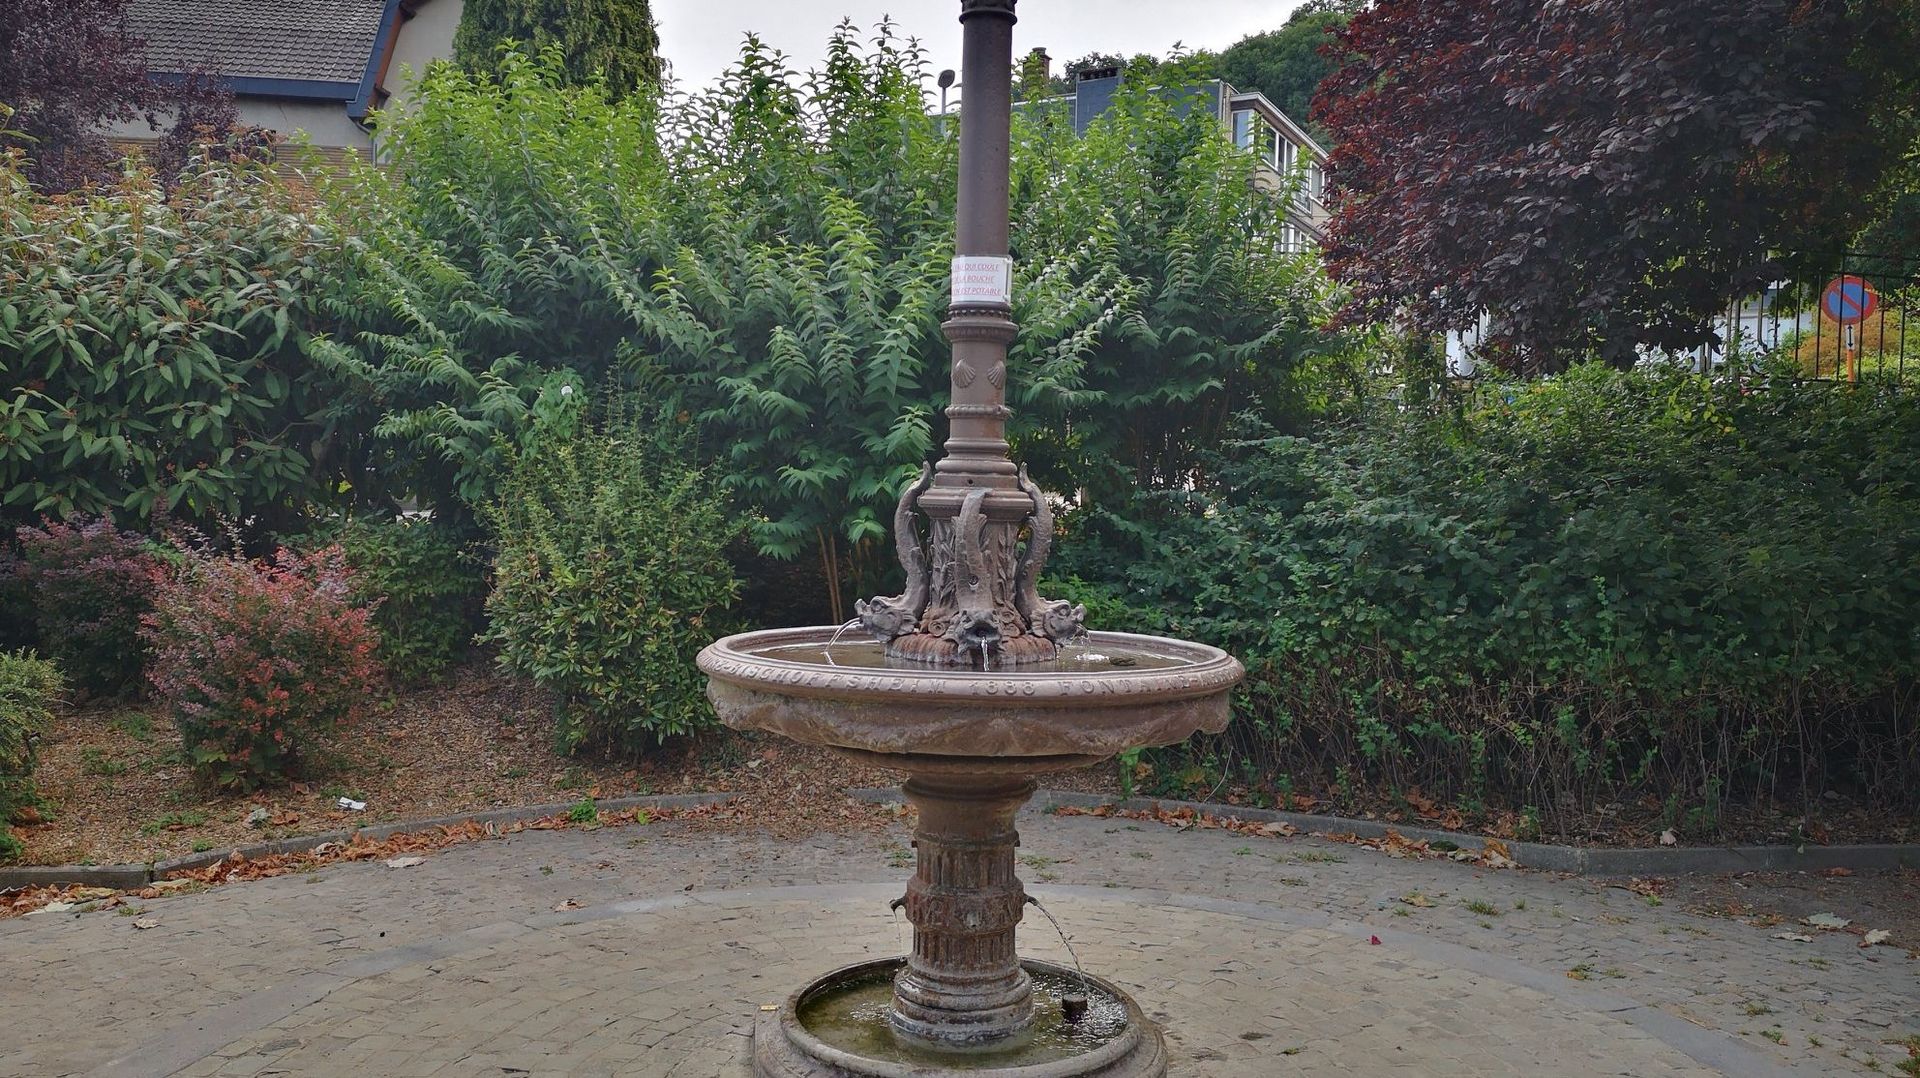 Une fontaine d'eau potable destinée aussi aux animaux au départ de la promenade conduisant au Sart-Tilman